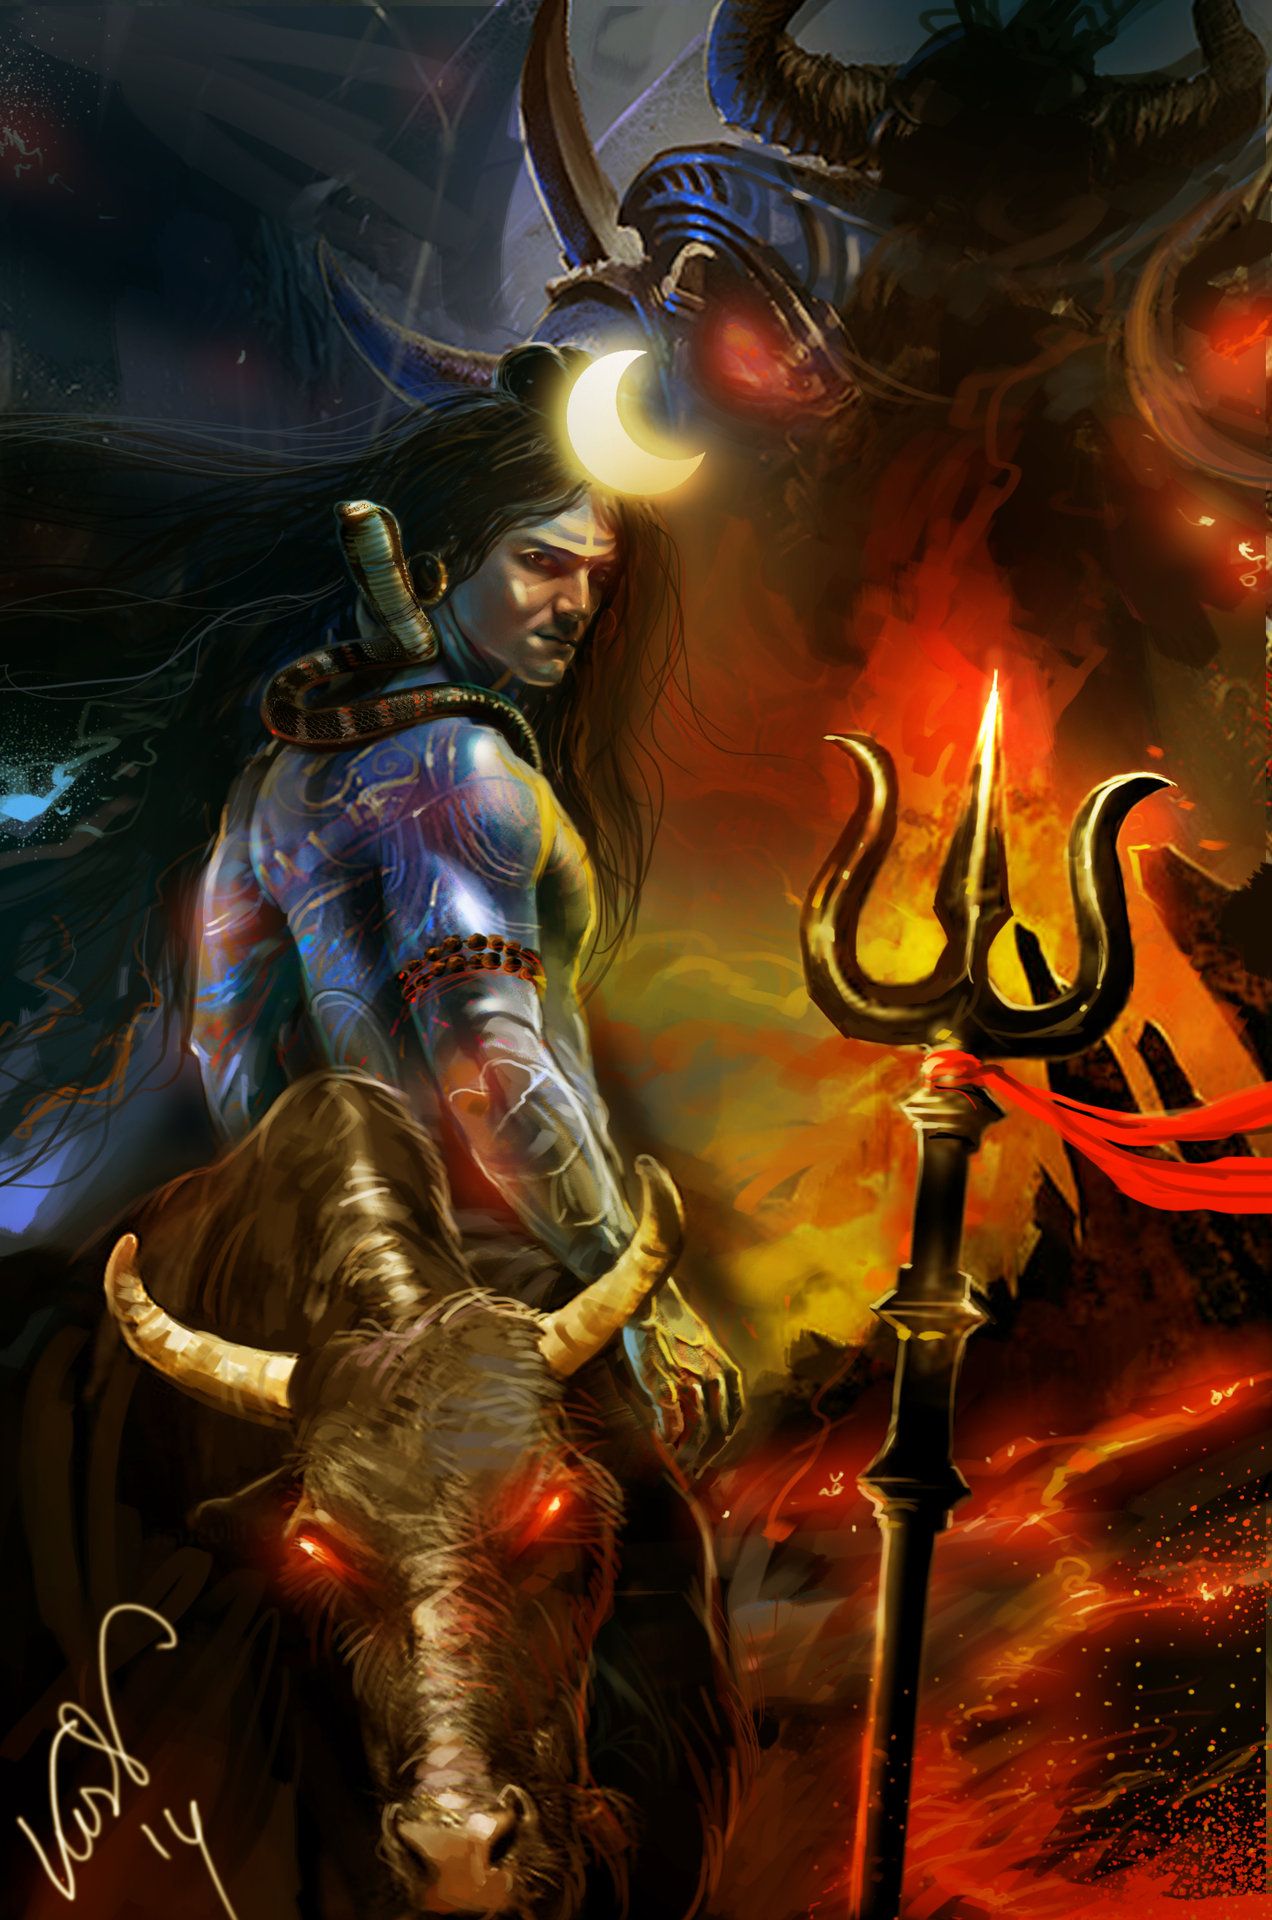 mahadev wallpaper,juego de acción y aventura,juego de pc,demonio,cg artwork,oscuridad